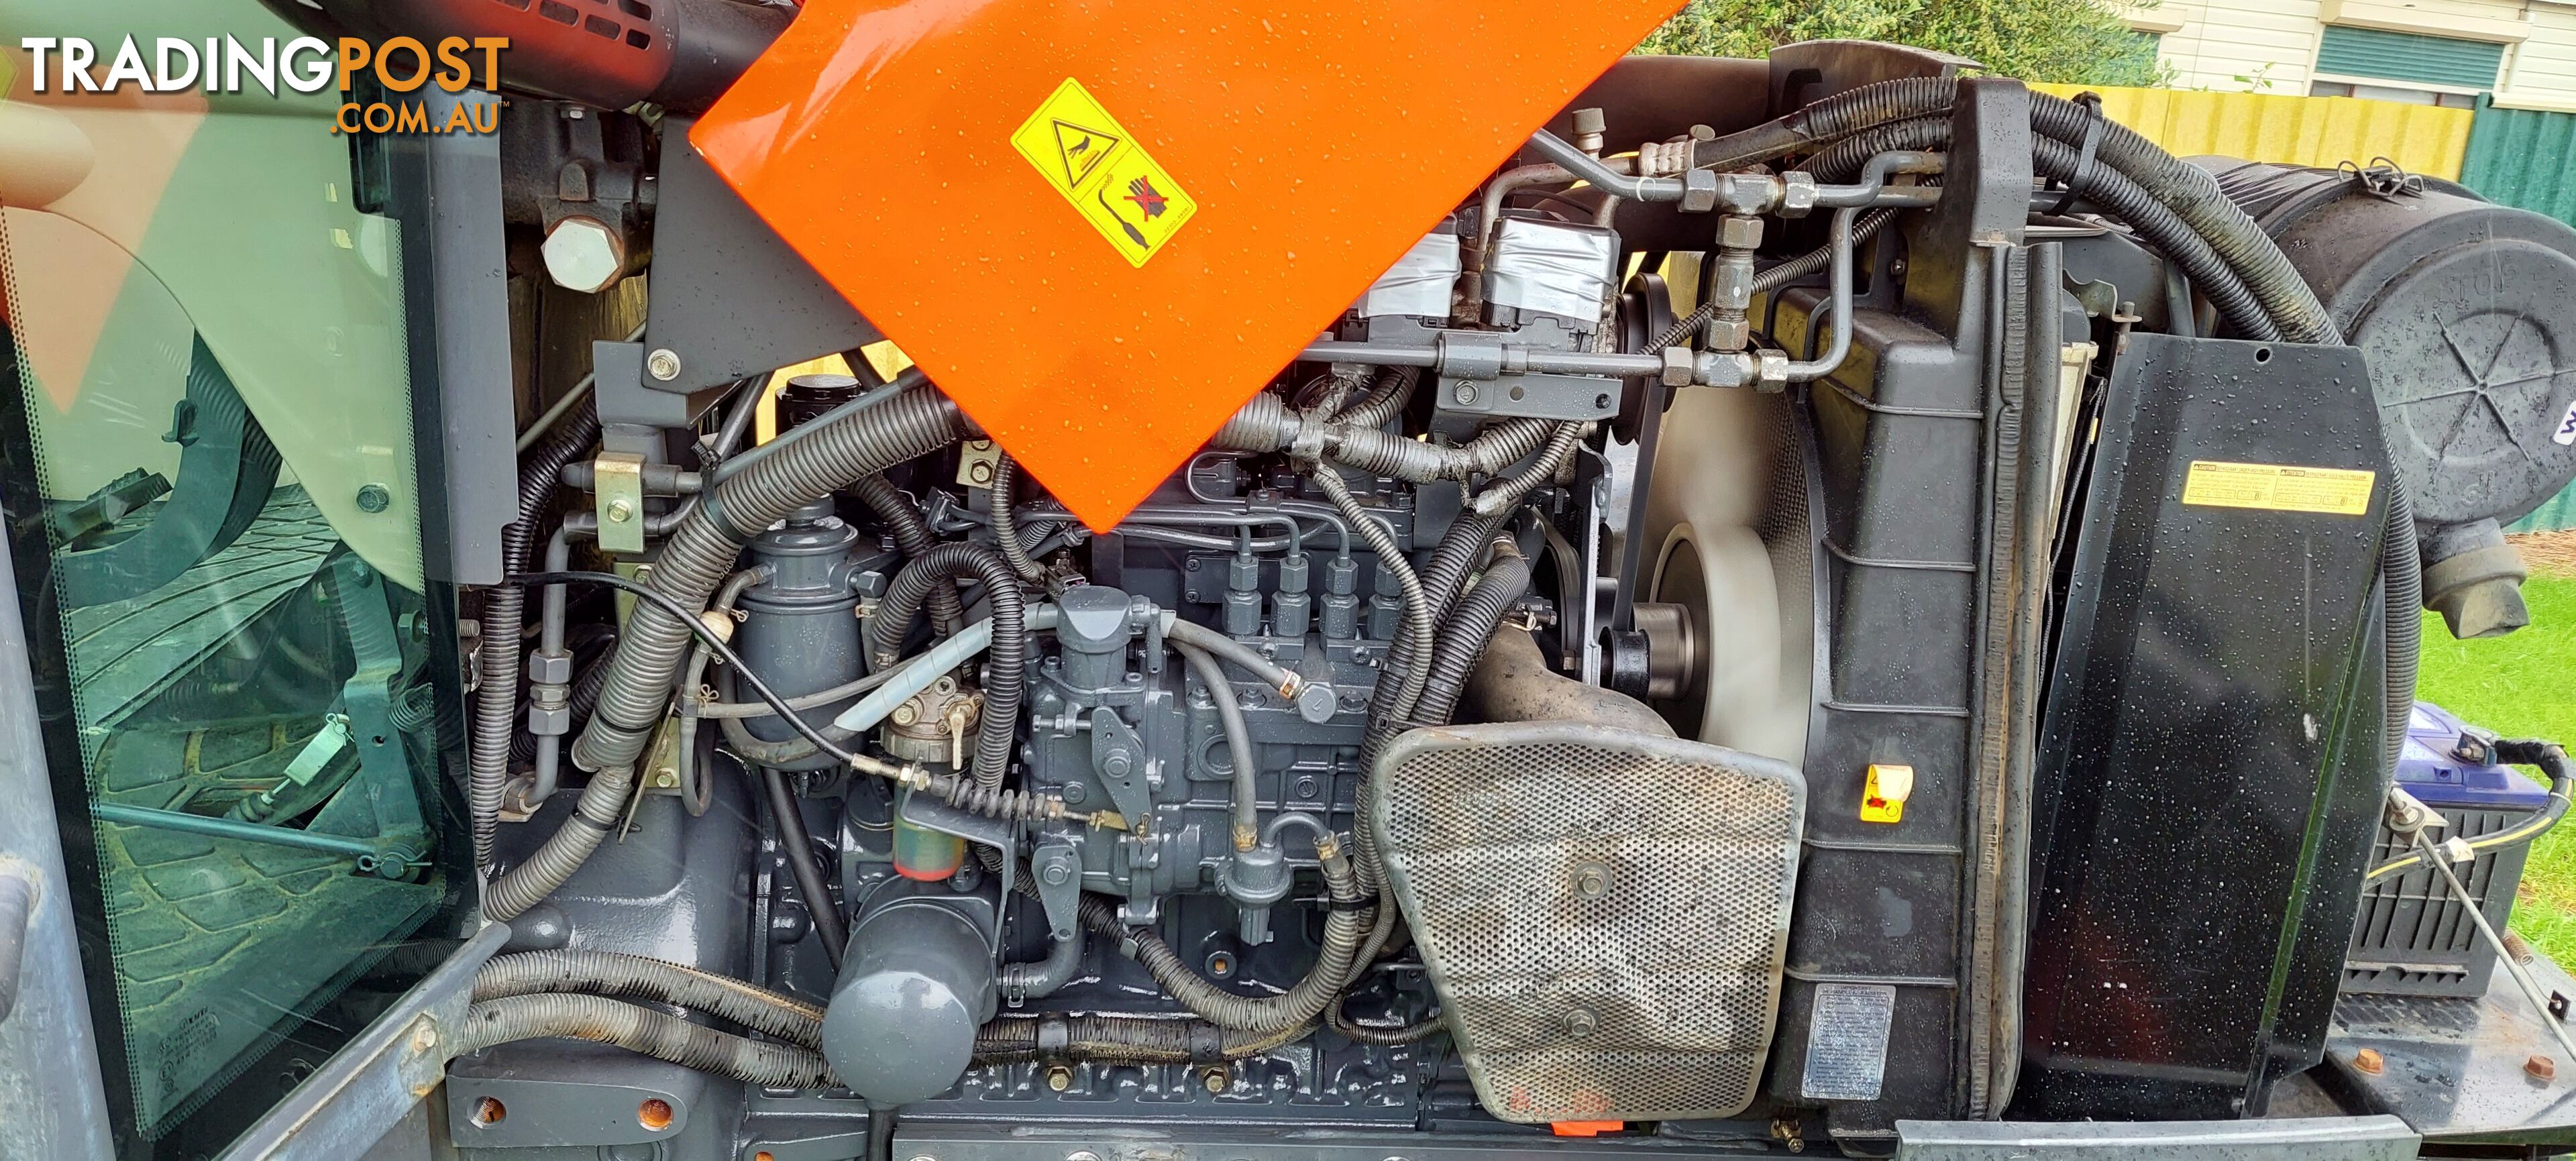 2015 Kubota M9540 Tractor